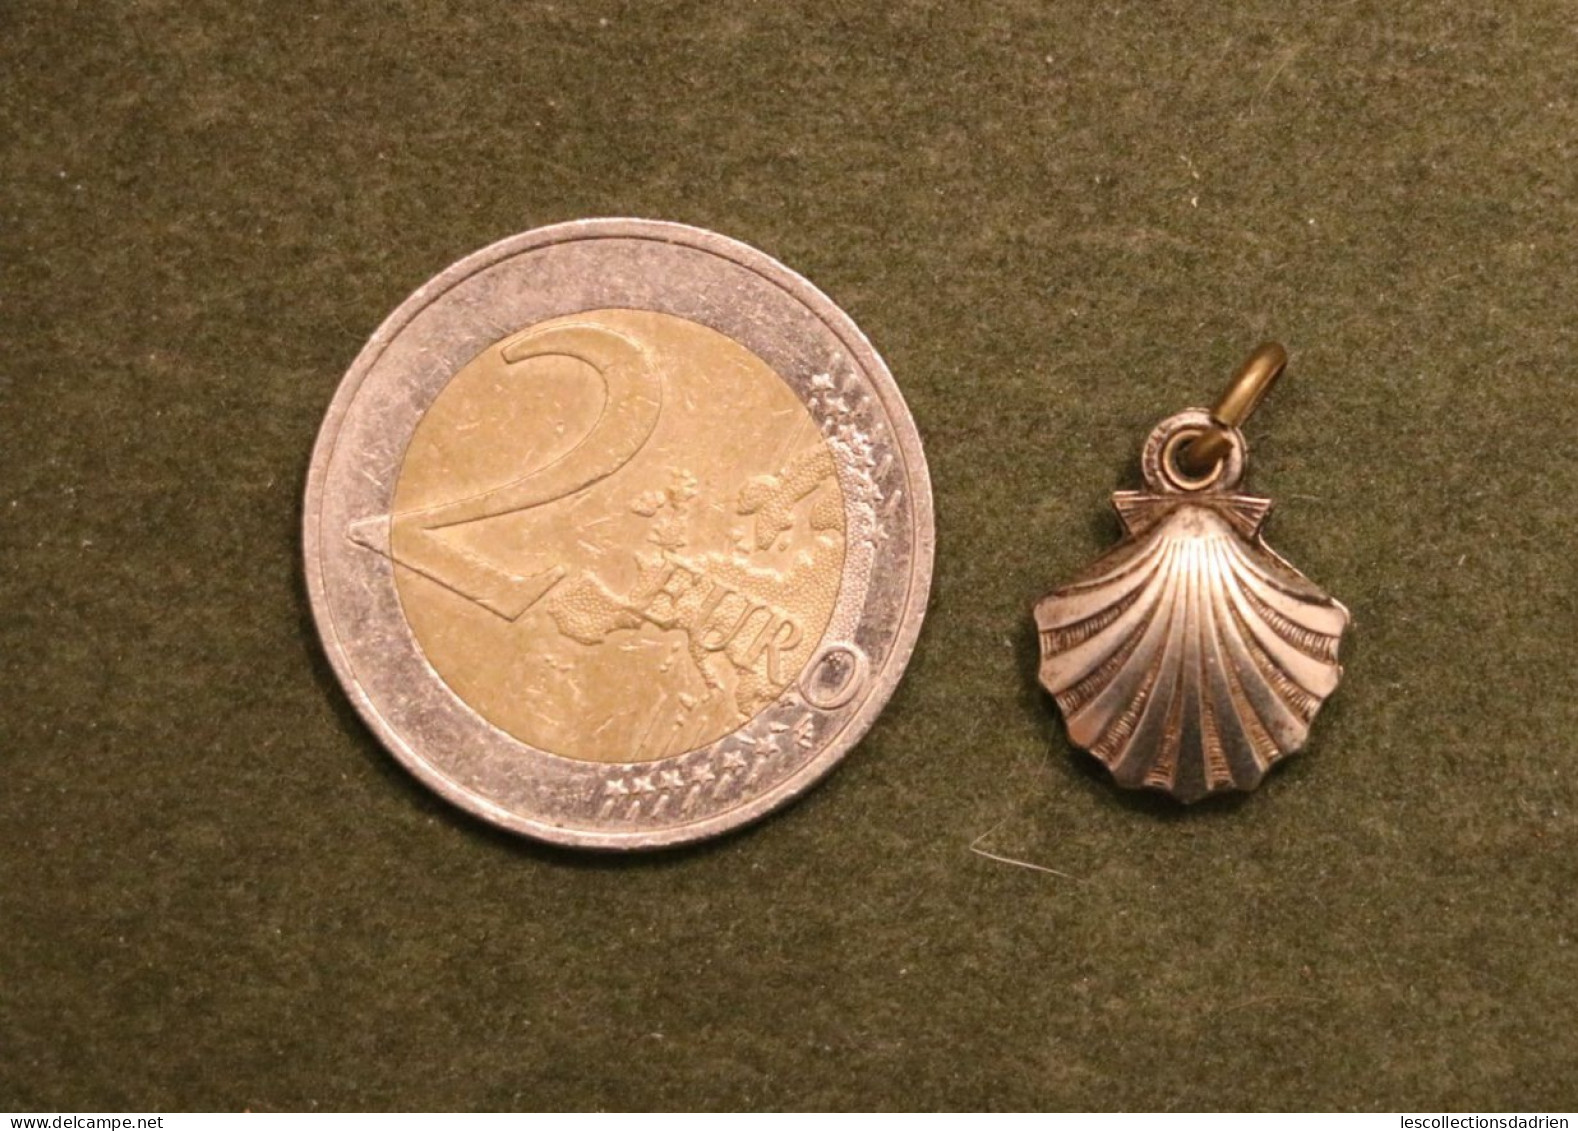 Médaille Religieuse - Coquille Saint-Jacques Sacré Coeur - Vierge à L'Enfant - Religious Medal Pélerin - Religion & Esotericism